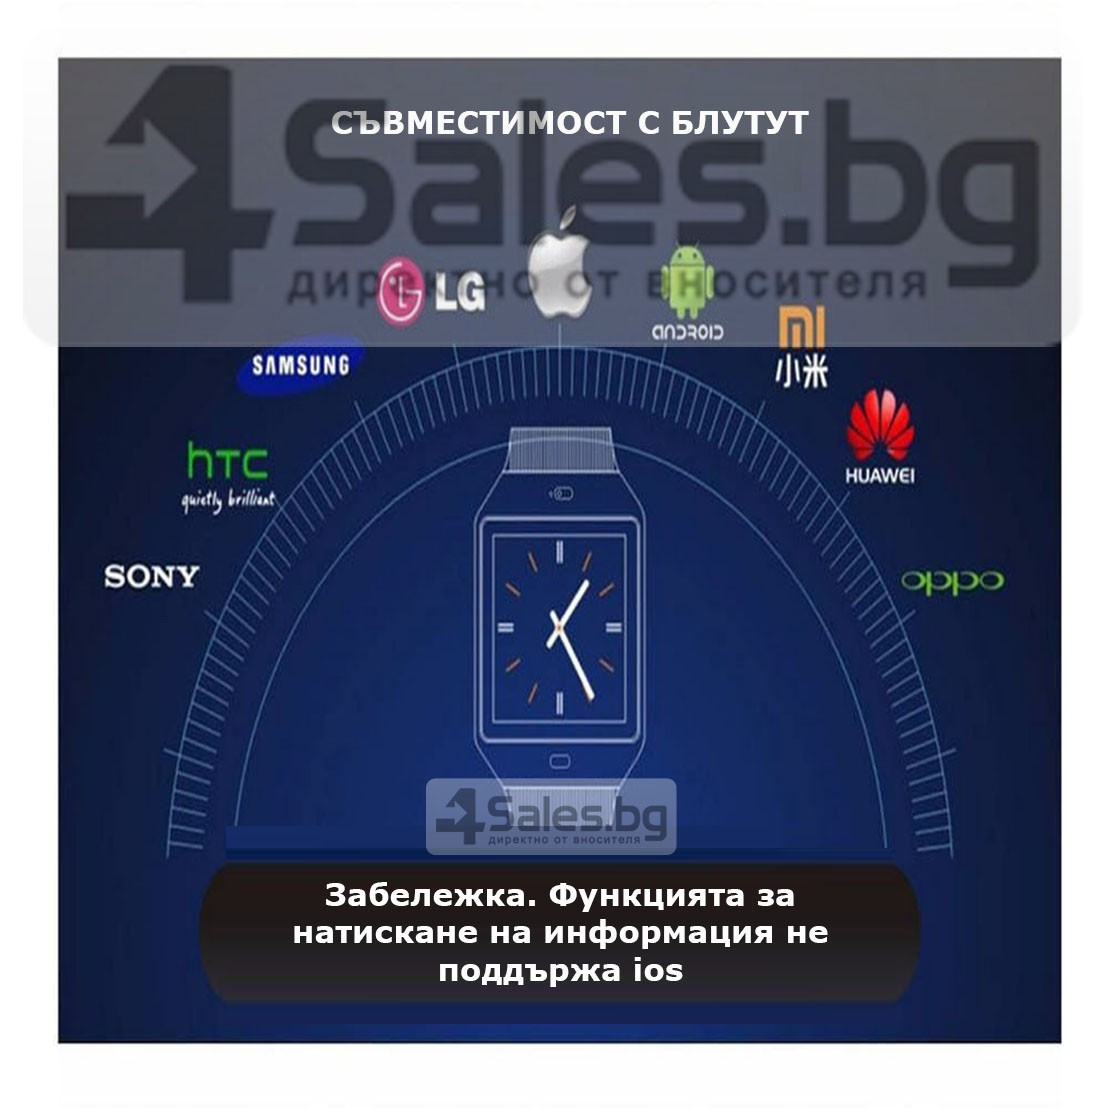 Смарт Часовник телефон с камера и сим карта Оригинален продукт dz09 на Български 50